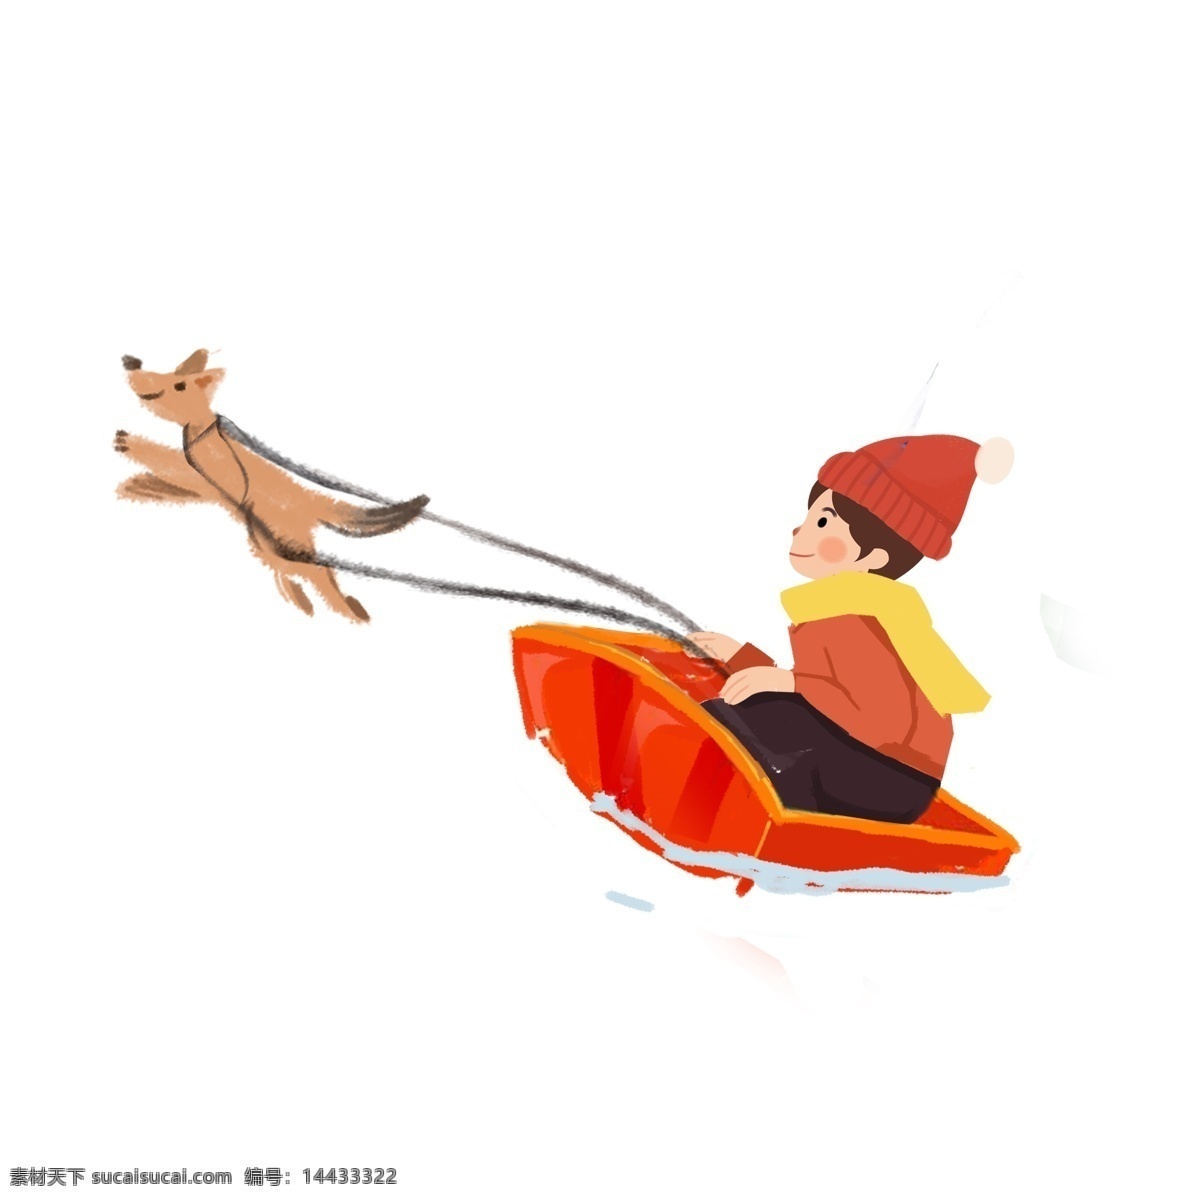 冬季 滑雪 溜 狗 男孩 元素 马车 卡通 人物 设计元素 简约 溜狗 手绘 创意元素 手绘元素 psd元素